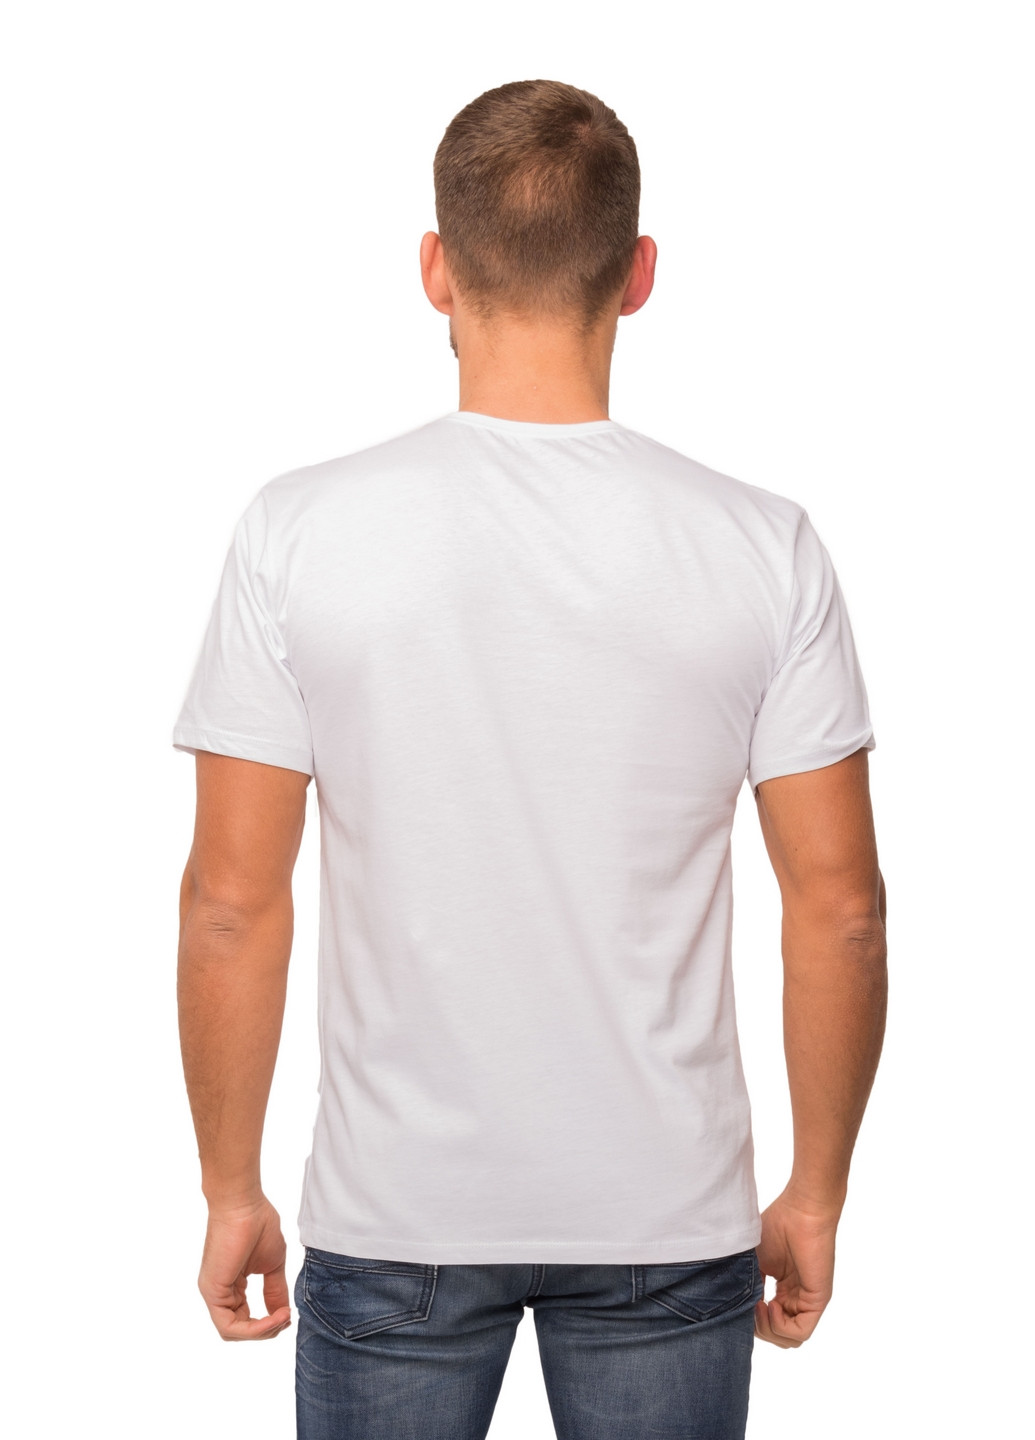 Біла футболка чоловіча Наталюкс 12-1343